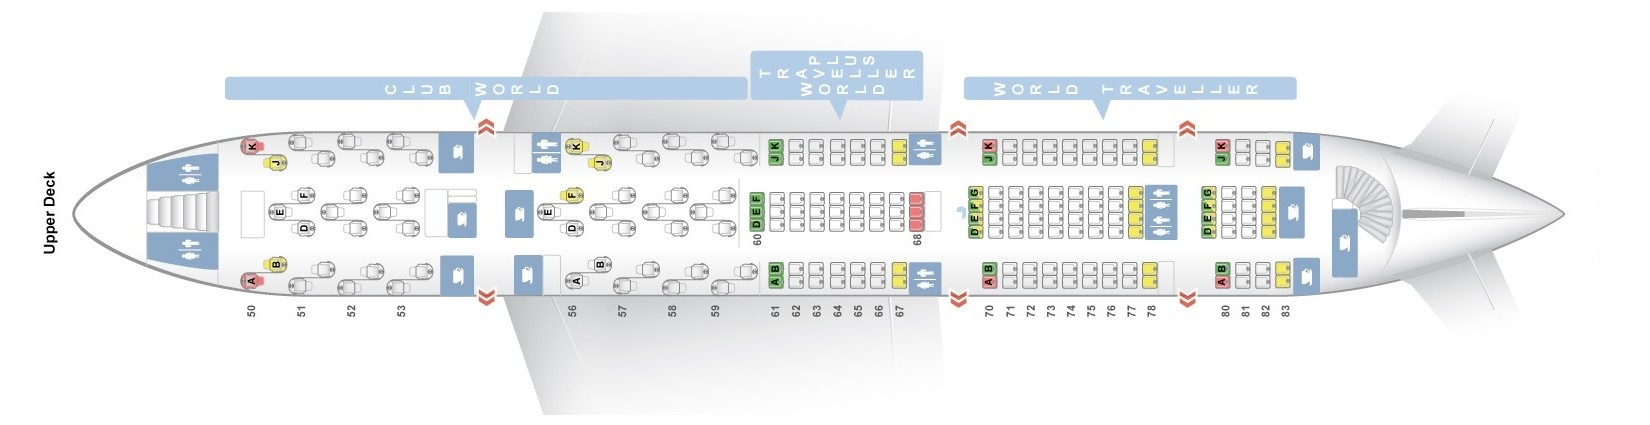 Airbus a380 800 seating plan